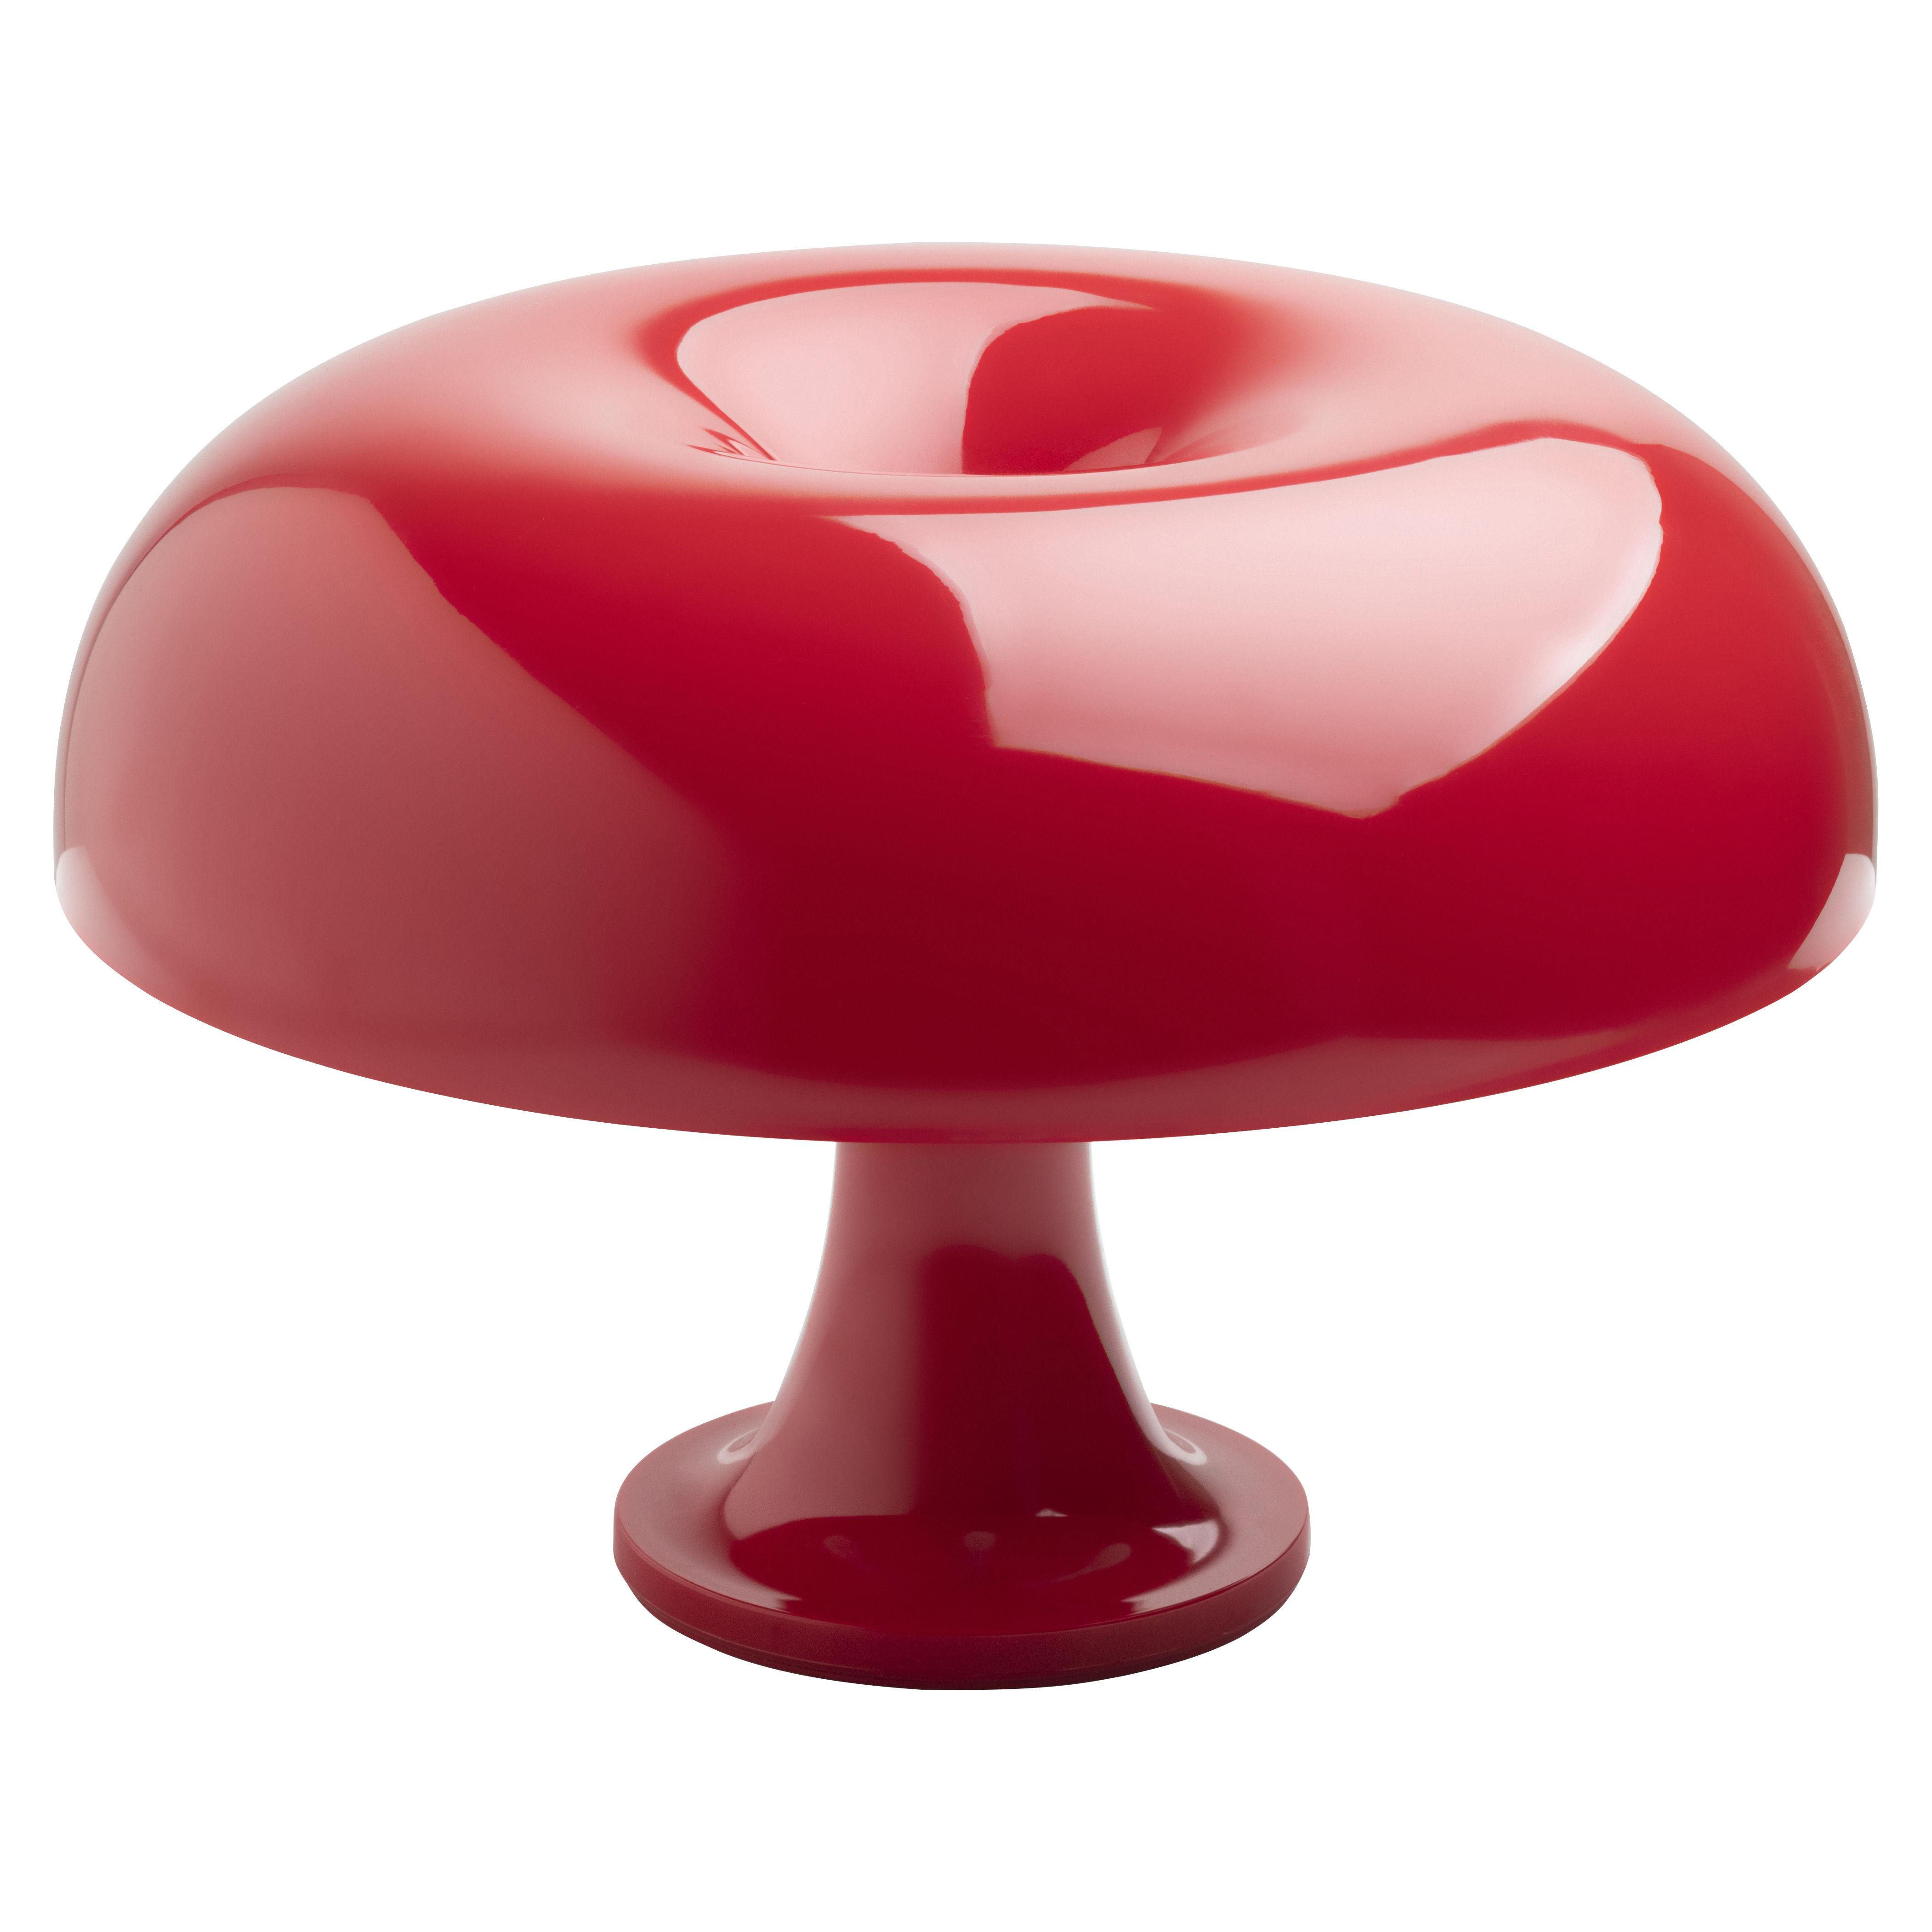 Lampe de table Nessino / Edition limitée Noël 2022 - Artemide rouge en matière plastique